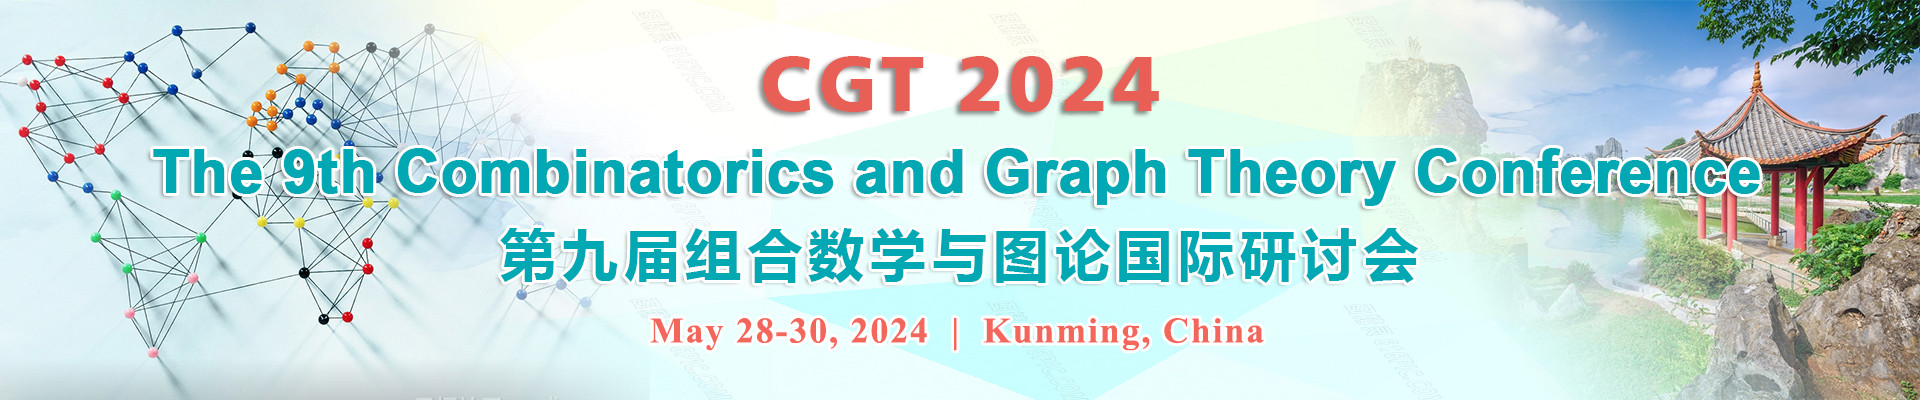 第九屆組合數學與圖論國際研討會(CGT 2024)